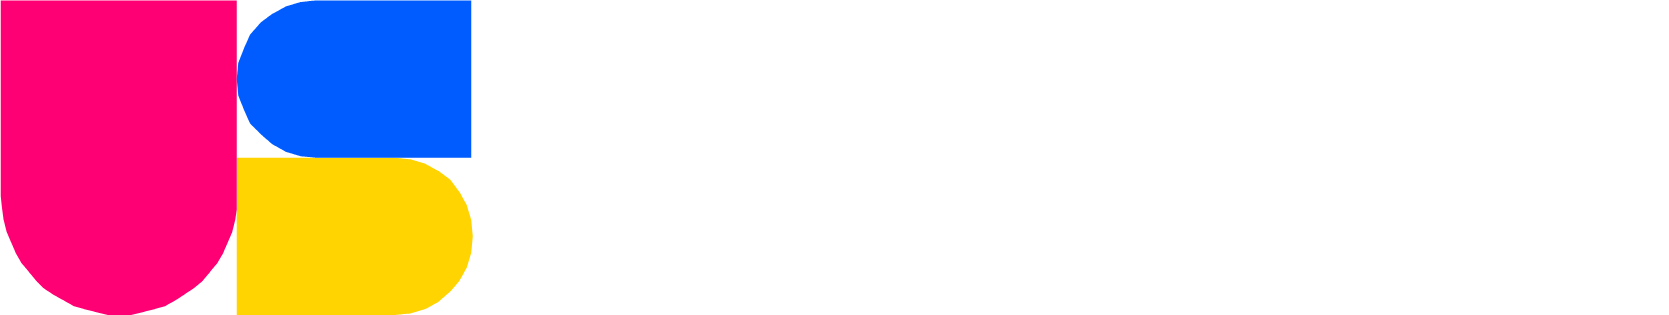 TaskUs logo grand pour les fonds sombres (PNG transparent)